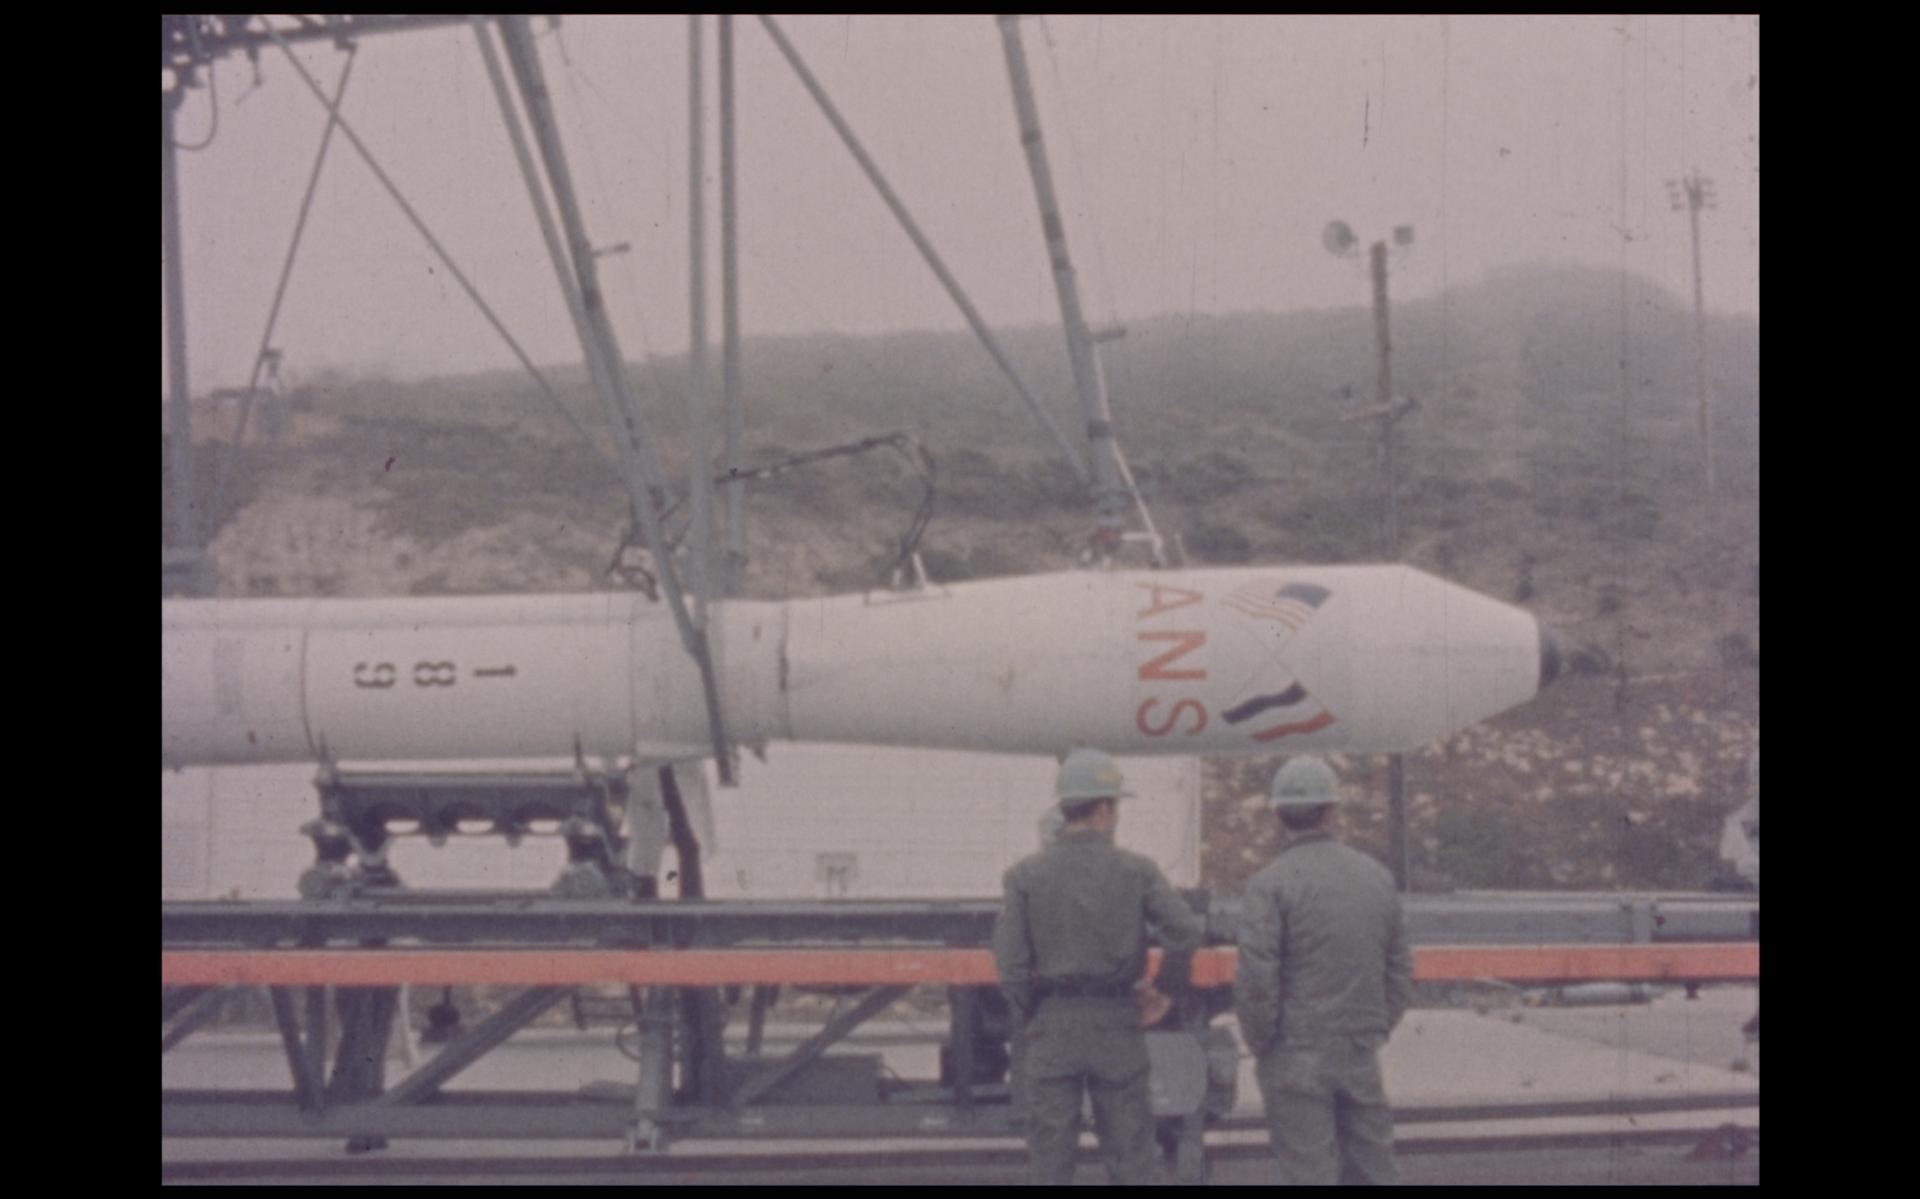 Raket met ANS aan boord wordt rechtop gezet op de lanceerplaats. Still uit documentaire